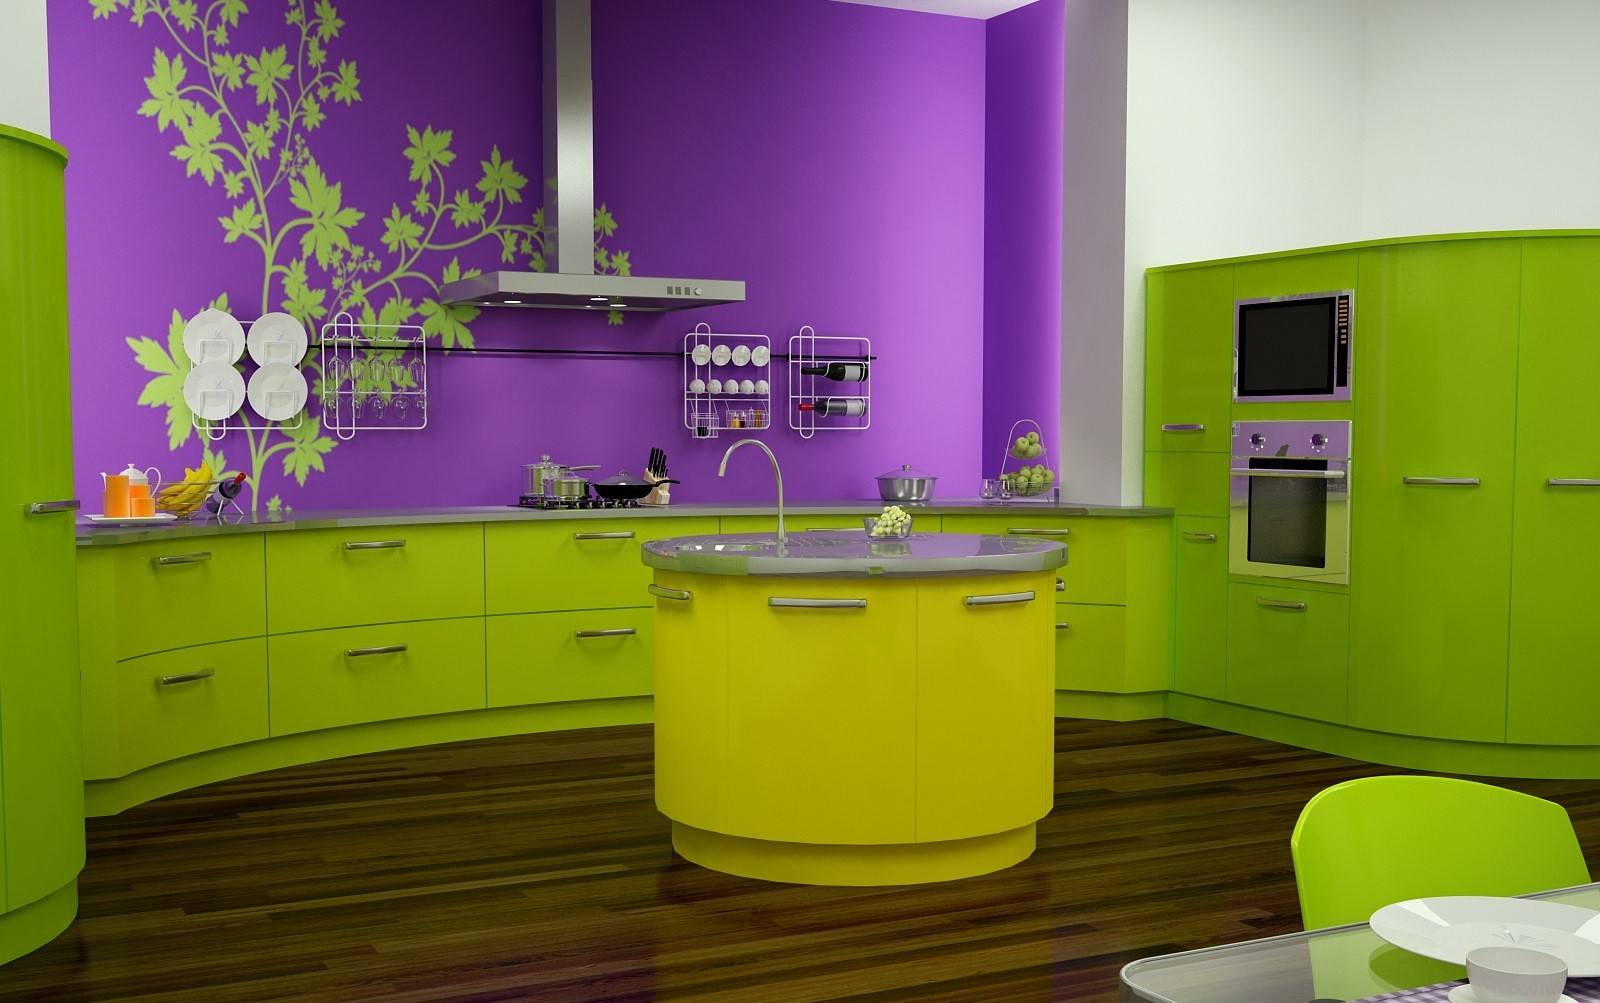 Лучшие идеи для дизайна кухонных стен: выбираем цветовую гамму и материалы